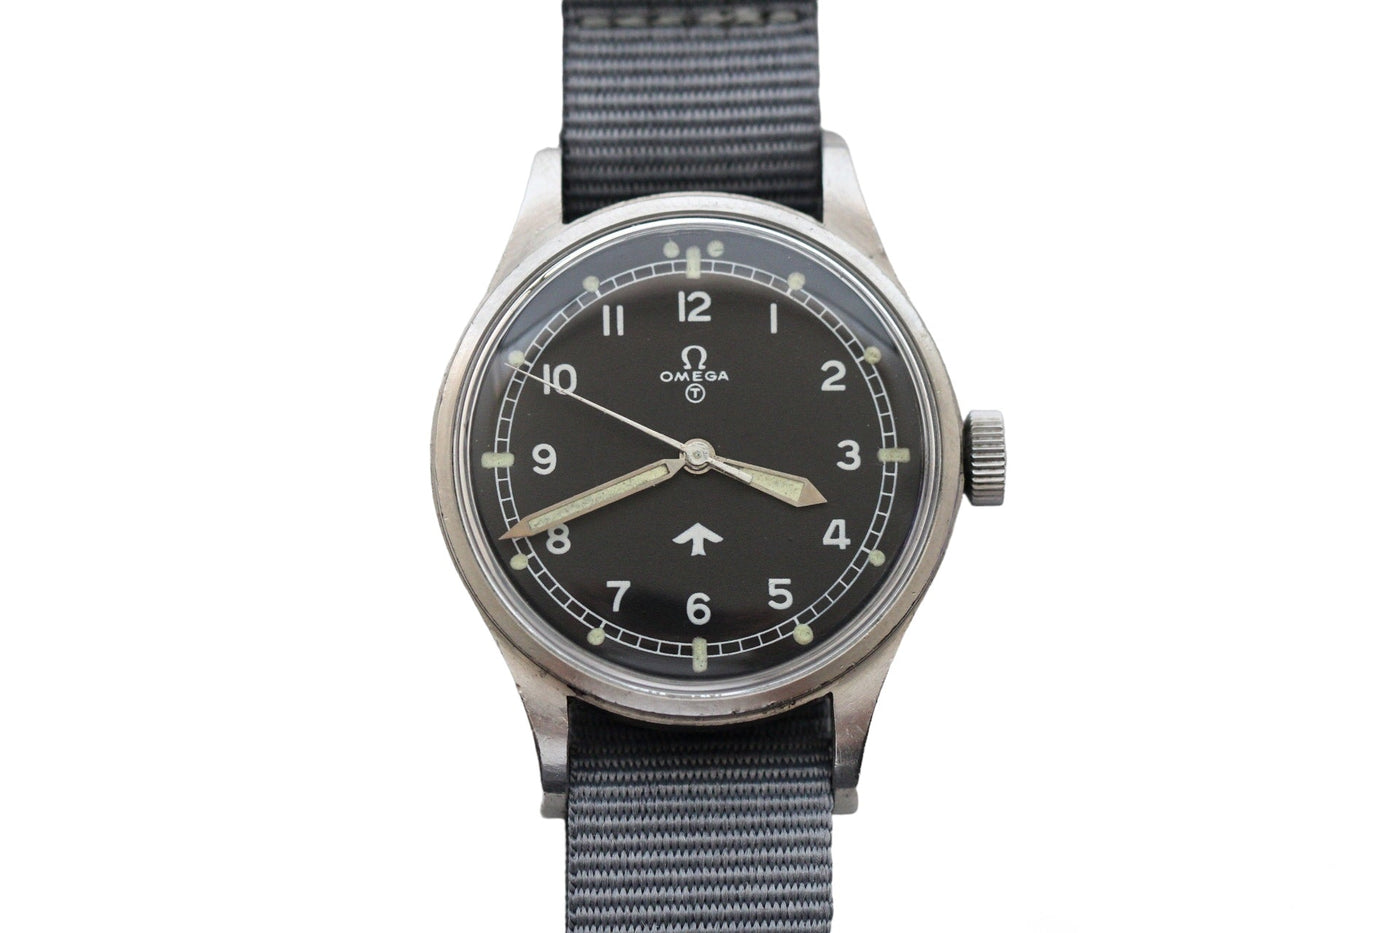 オメガ 「ファット・アロー 」空軍パイロット用腕時計 ミリタリーウォッチ1953年製